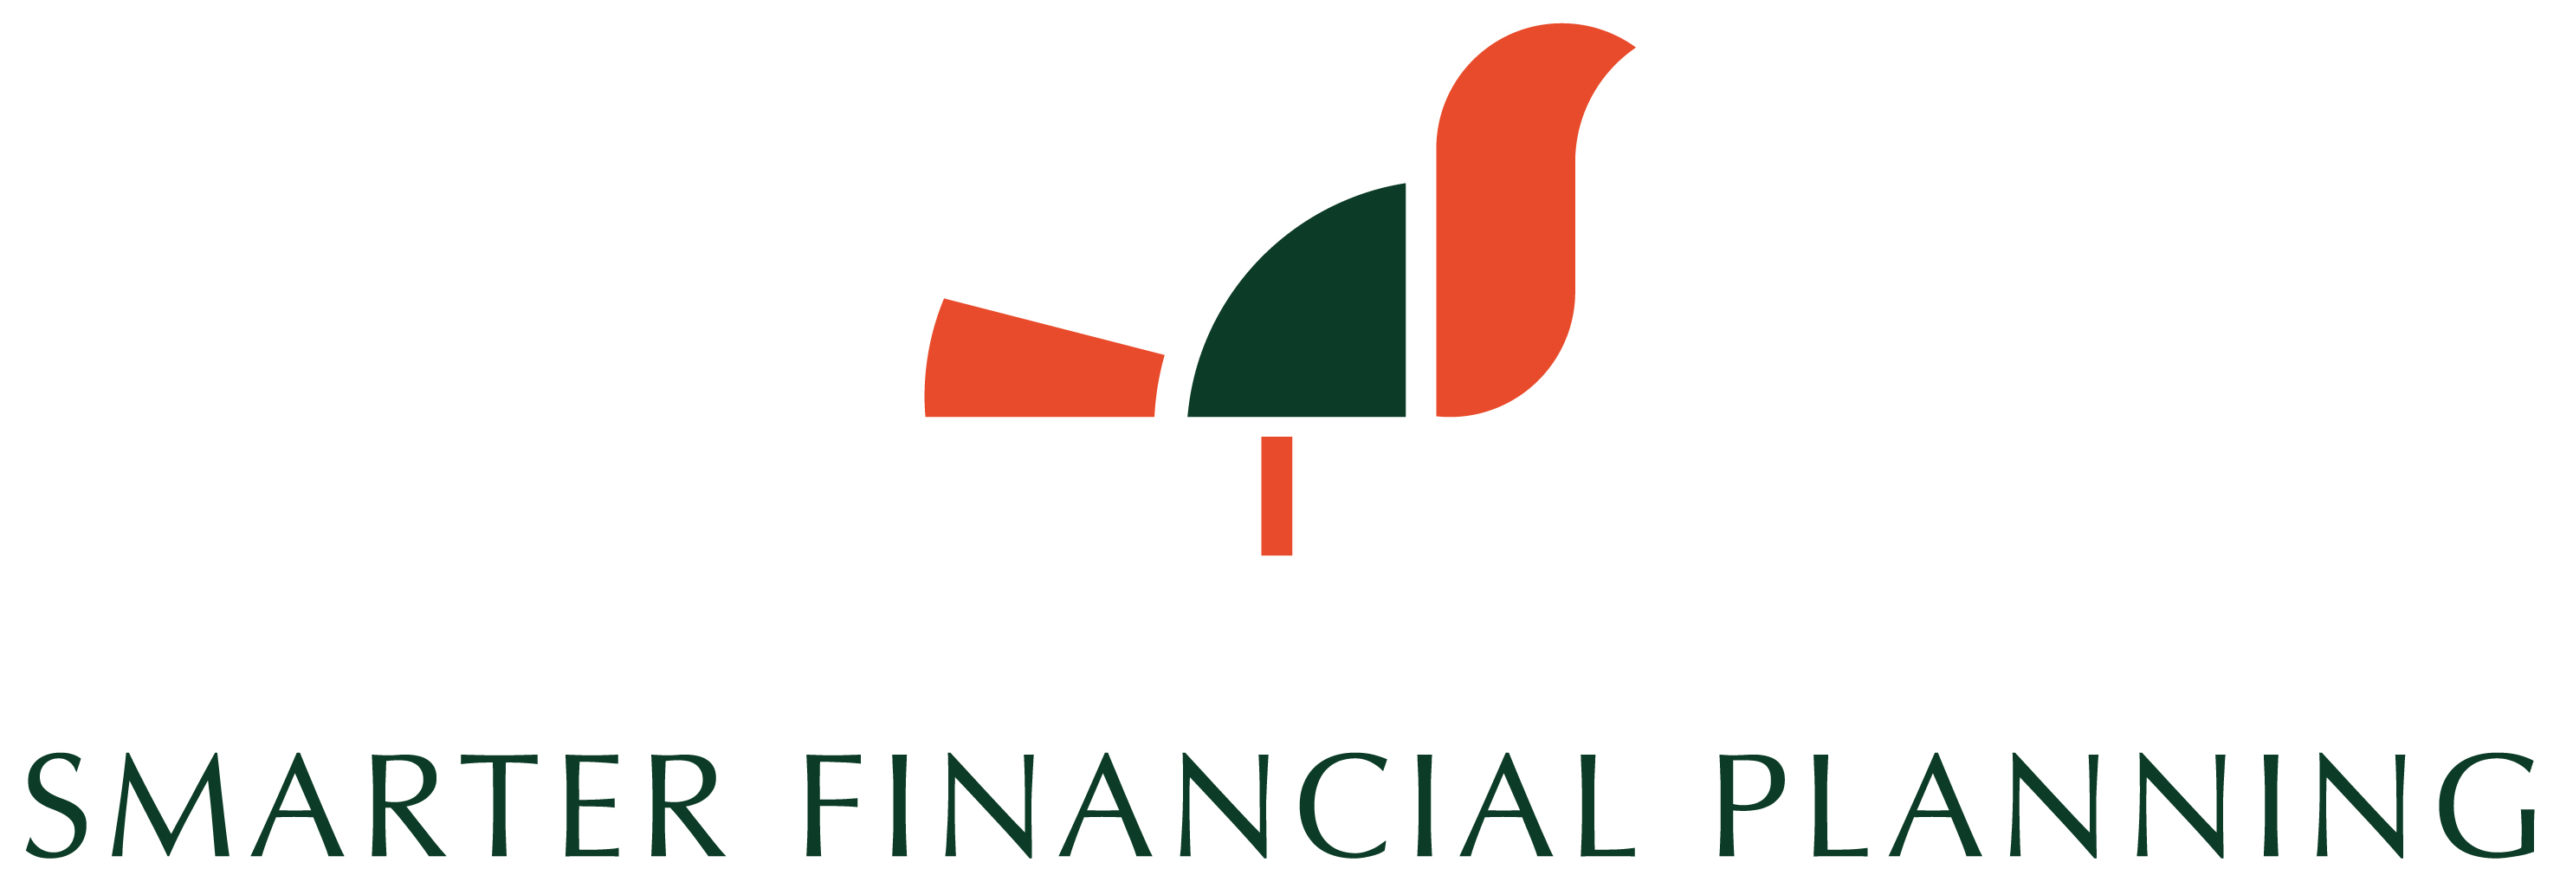 Linked logo for Smarter Financial Planning